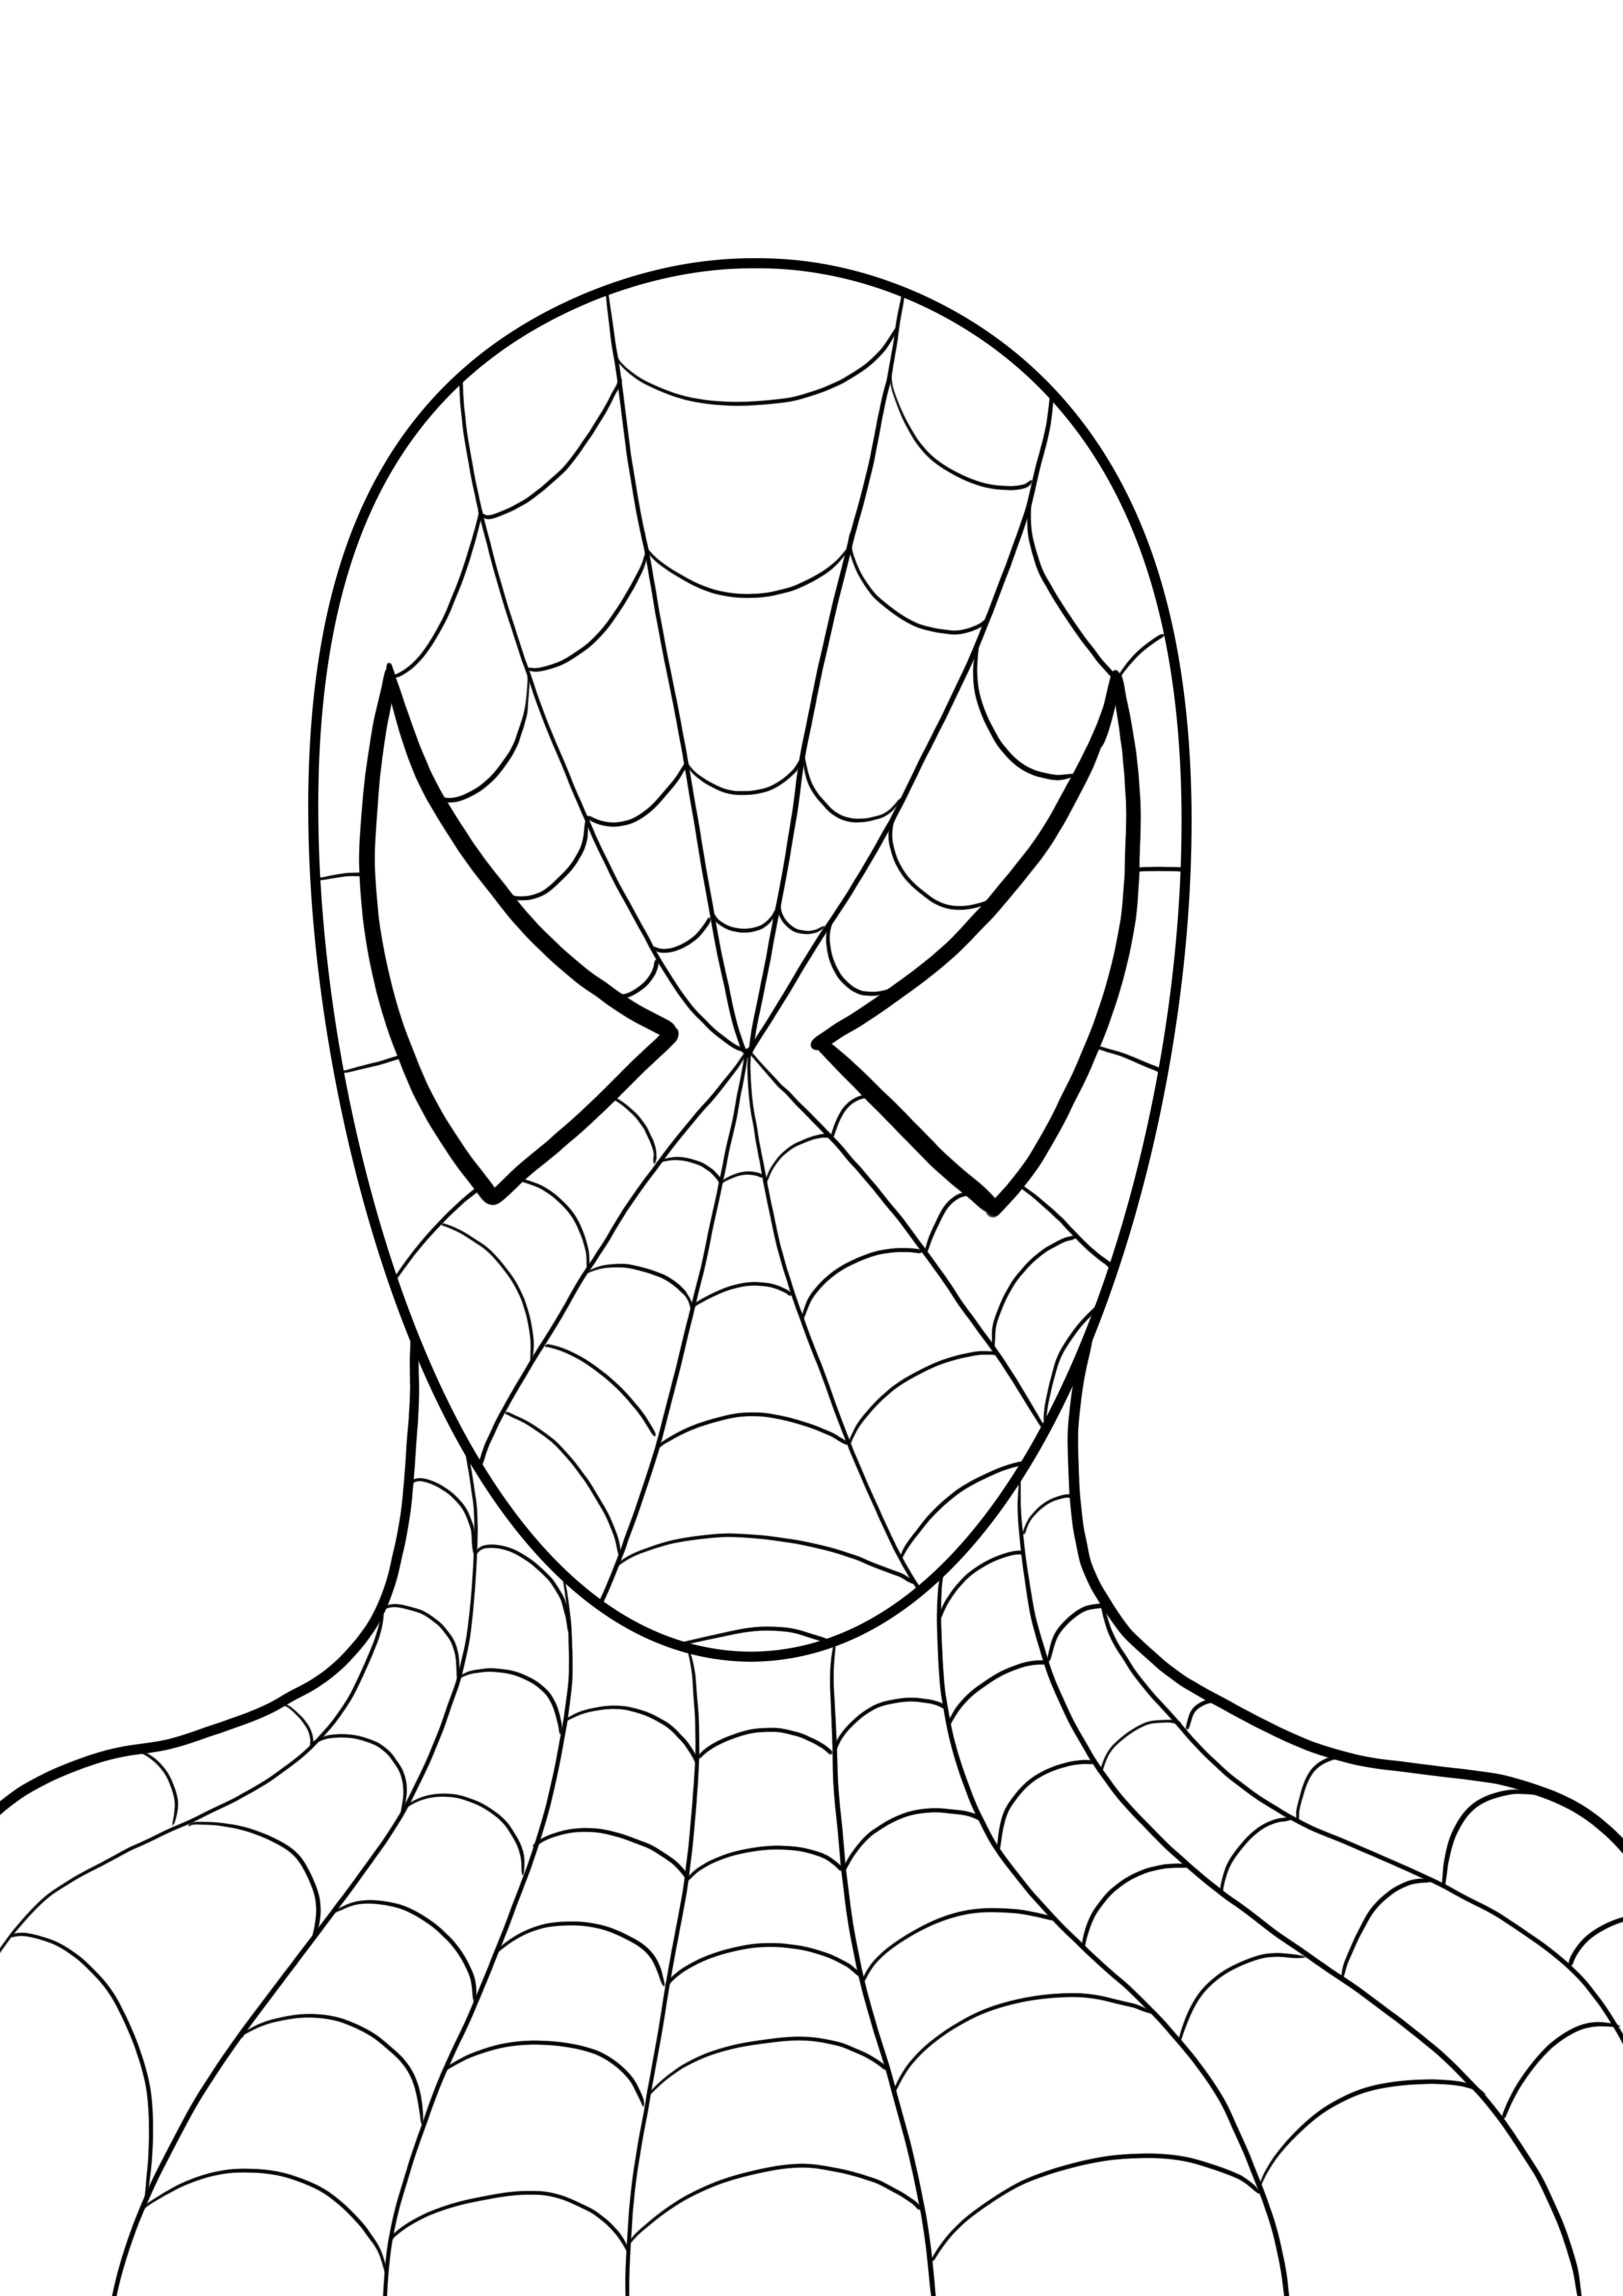 Head of Spiderman scarica e colora gratuitamente